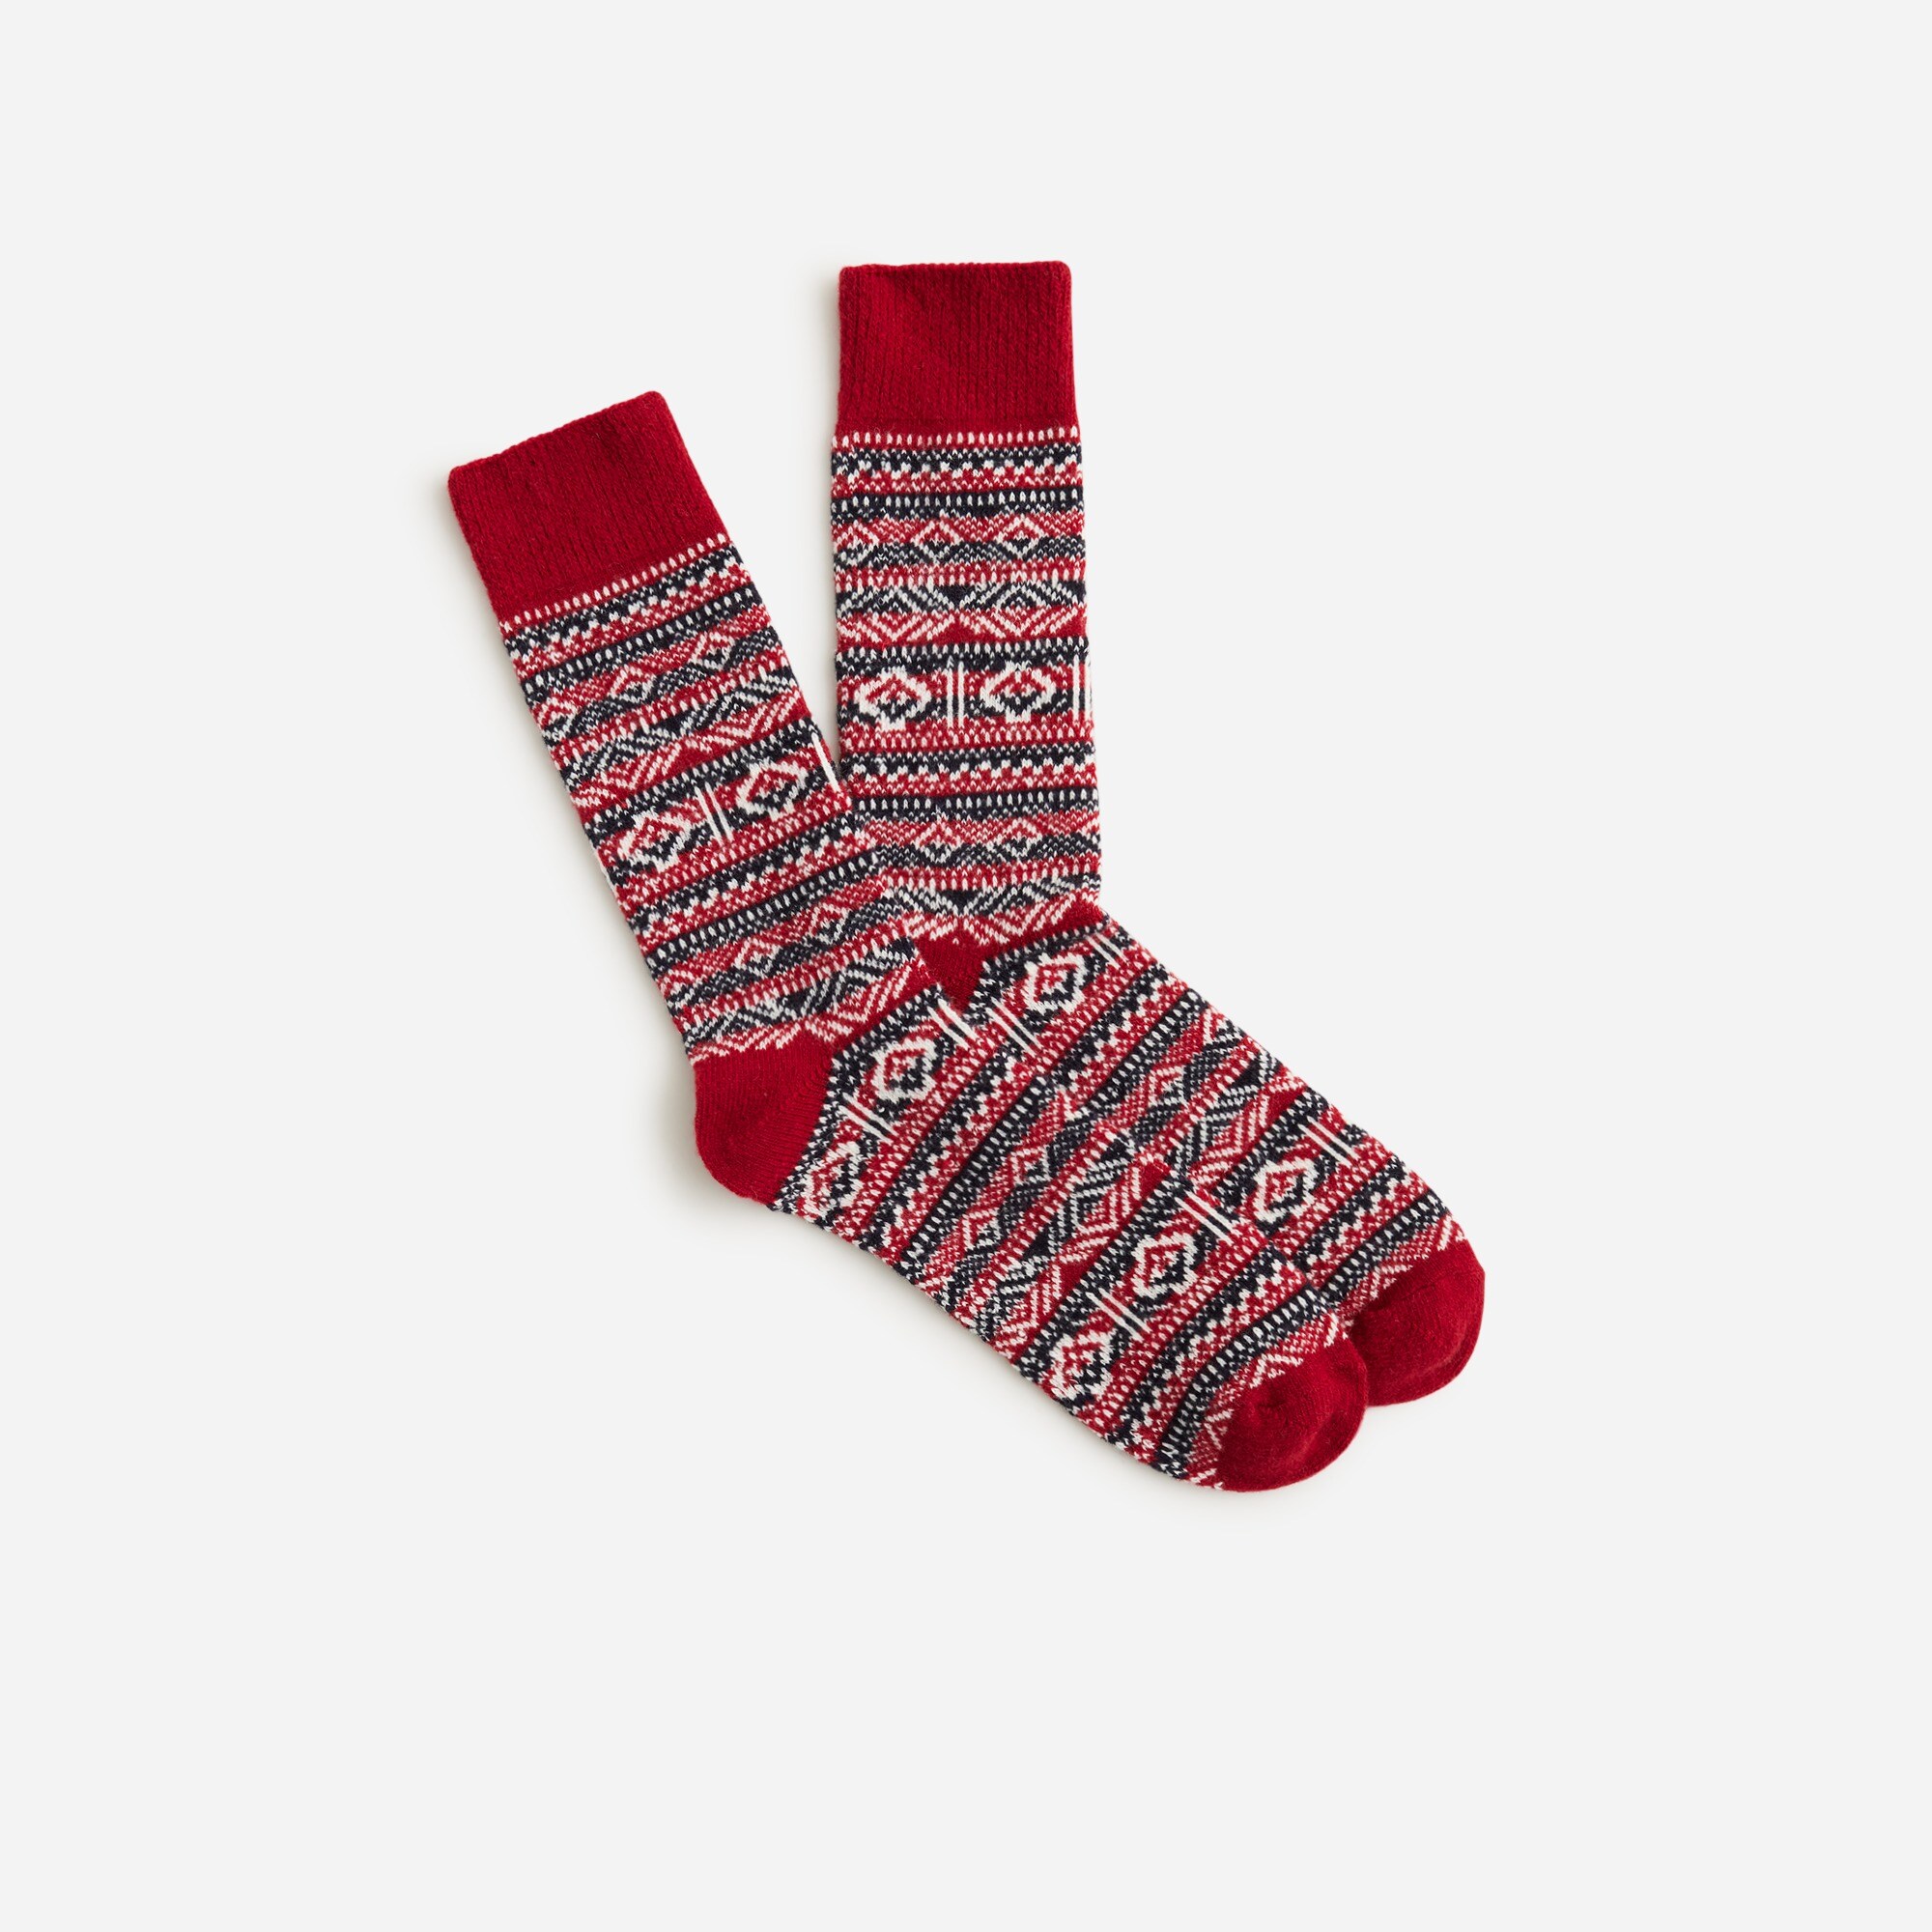  Lambswool-blend Fair Isle socks